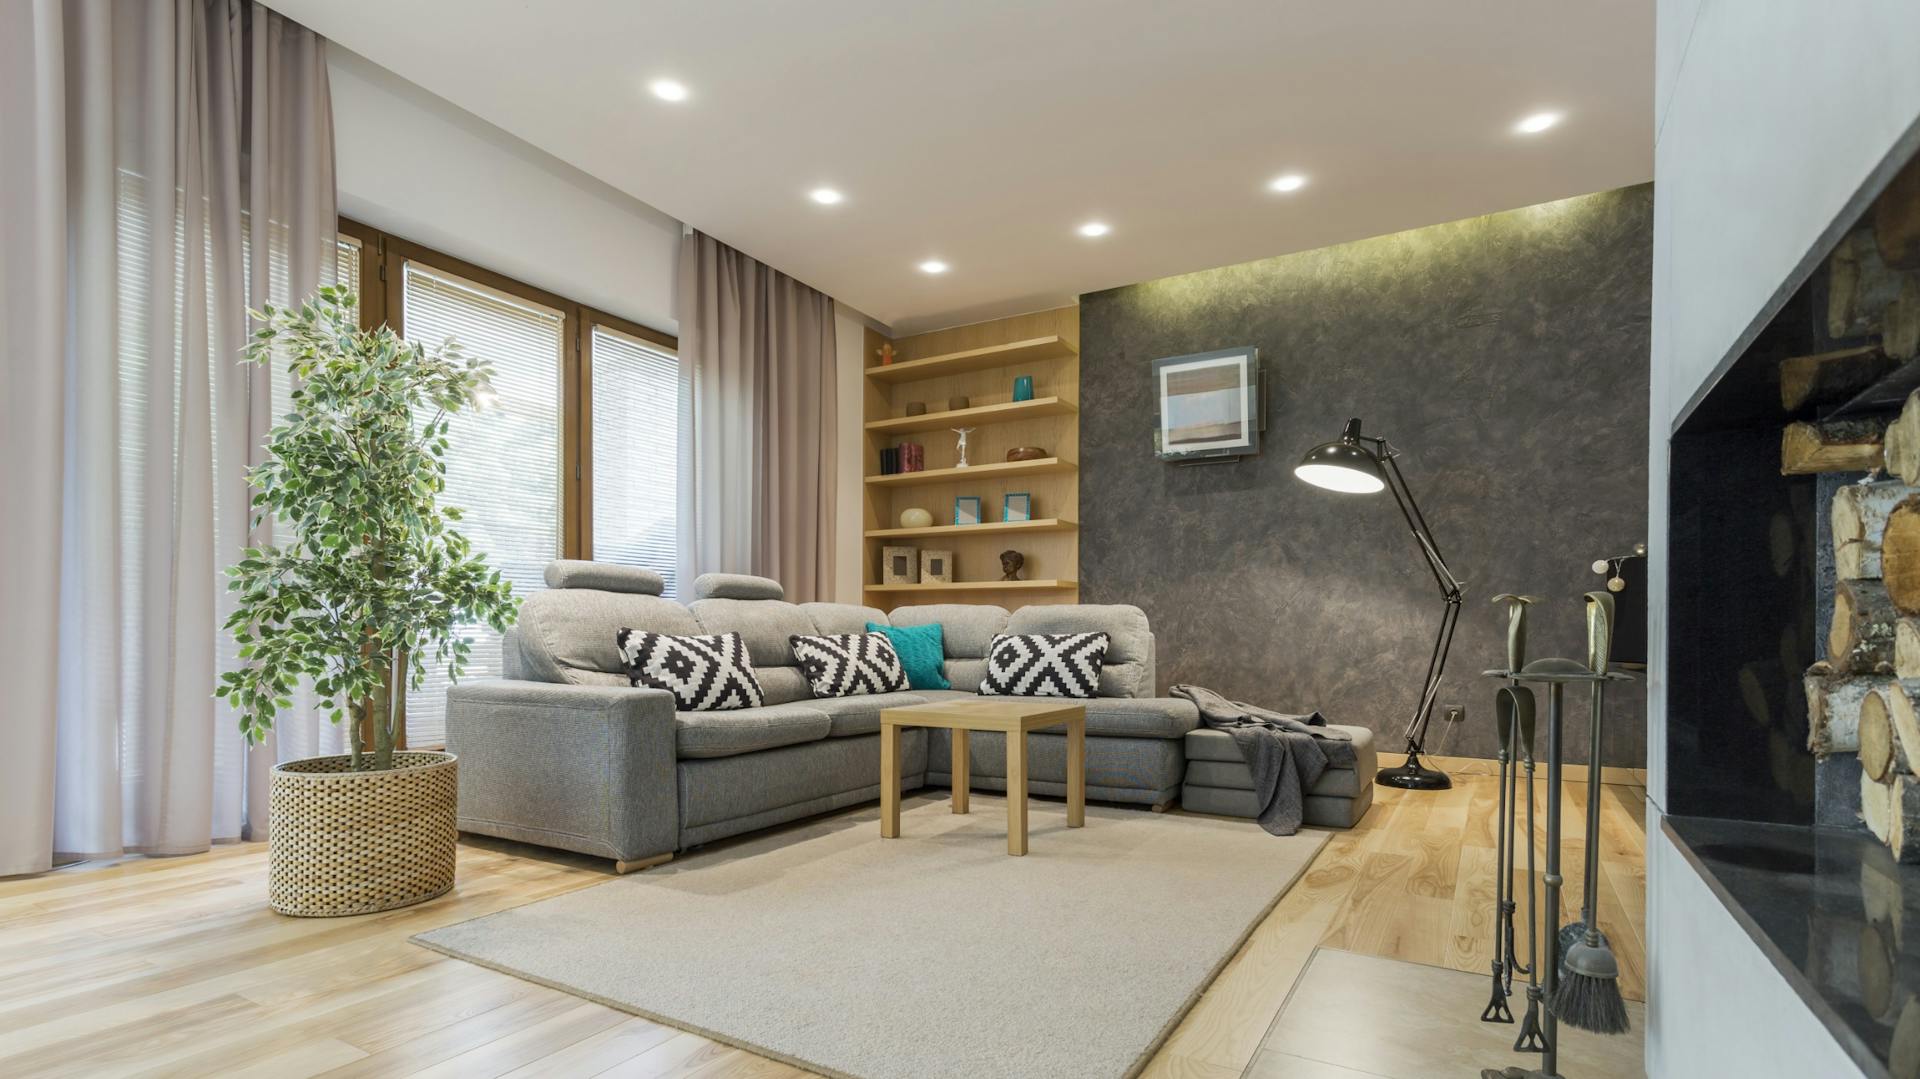 Wohnzimmer mit grauem Sofa, hellem Teppich, Kamin und indirekter Beleuchtung durch Deckenspots